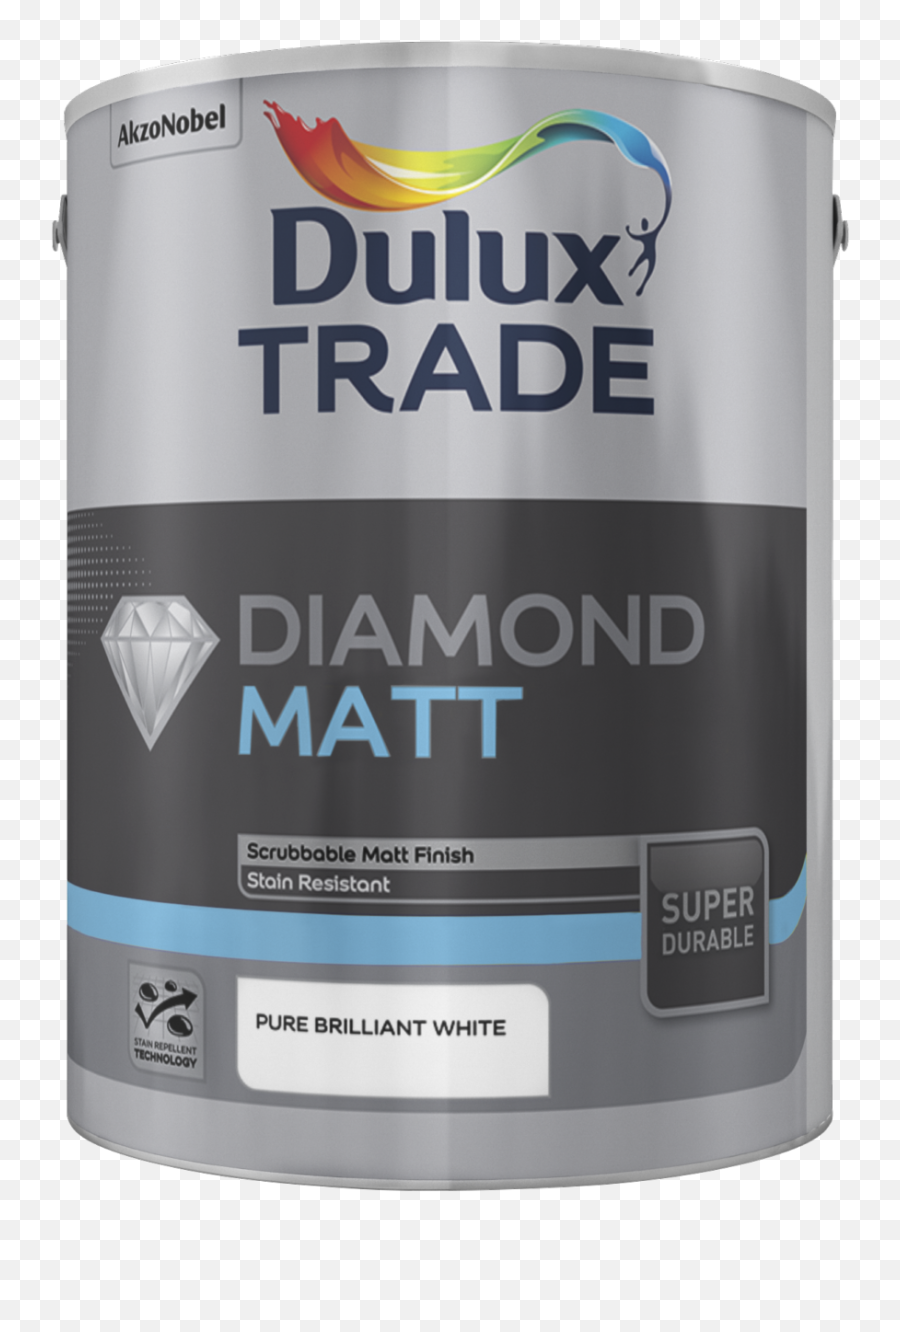 Dulux Trade Diamond Matt - Dulux Trade Diamond Matt Emoji,Emotion Paint Colors